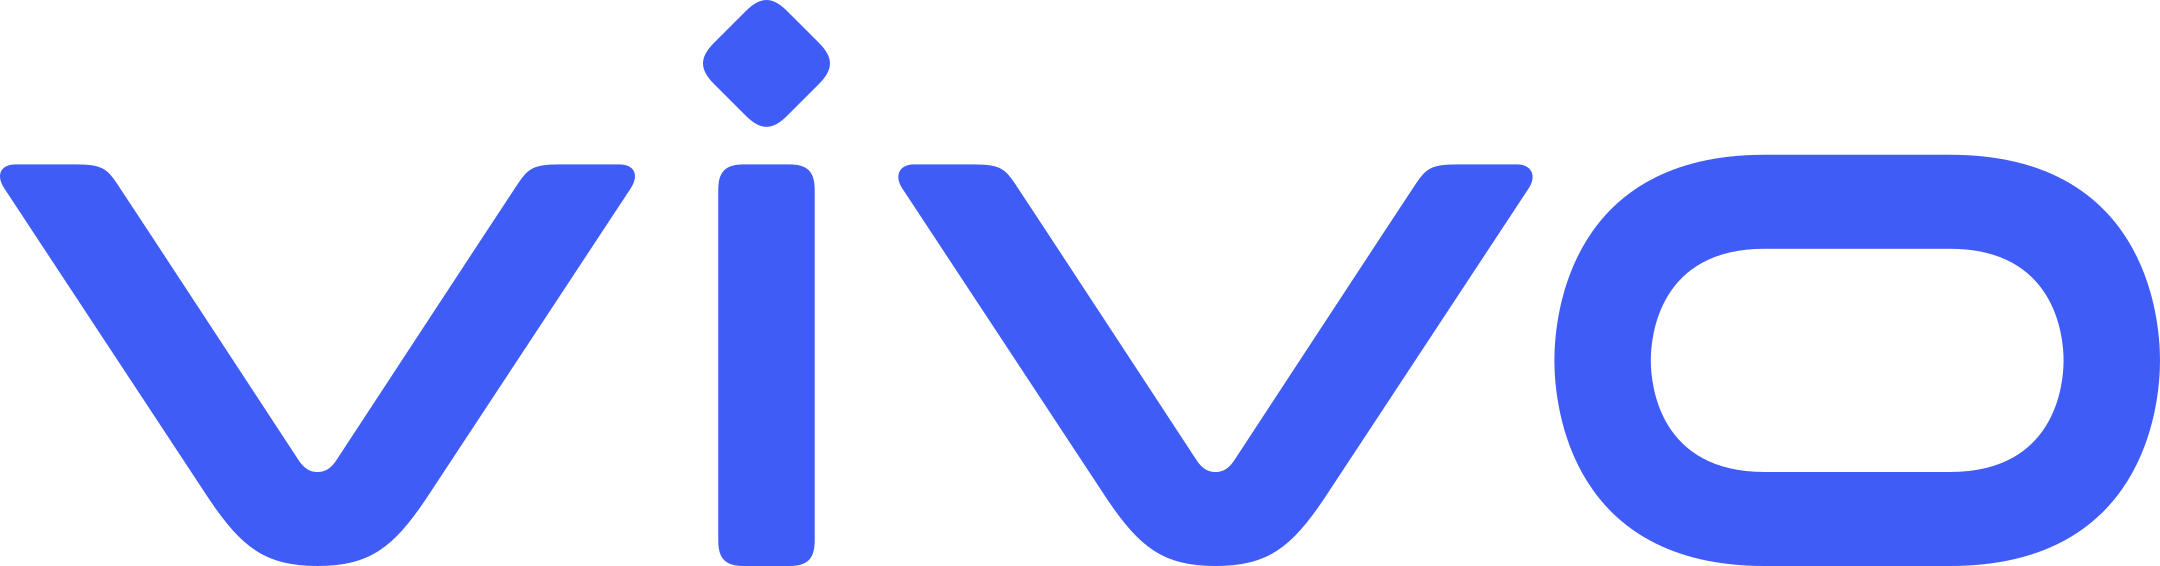 Vivo Smartphones Logo.